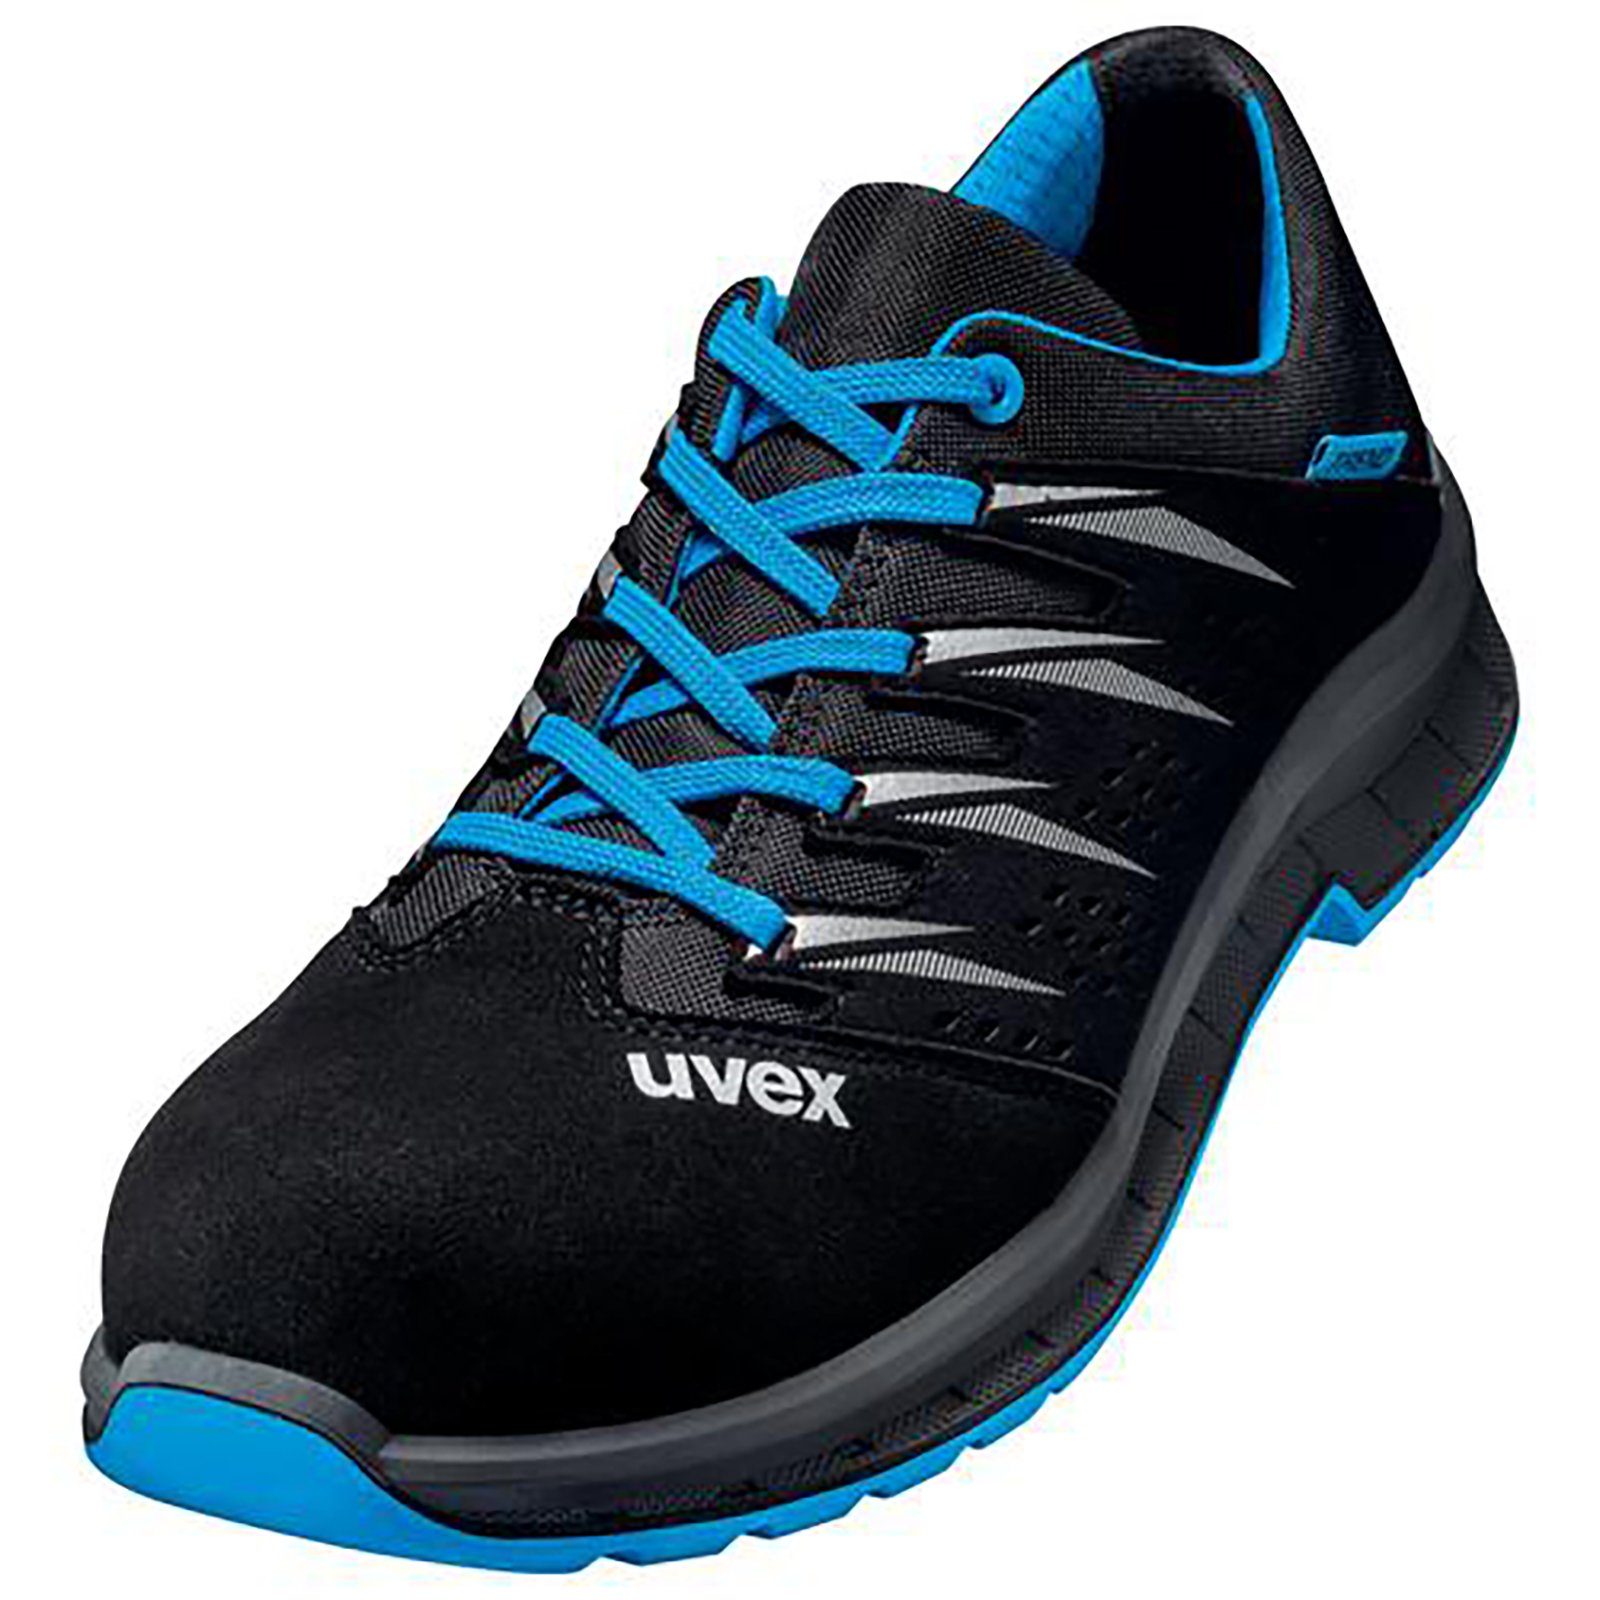 Uvex 2 trend Halbschuhe S1 schwarz blau, Sicherheitsschuh Weite 10